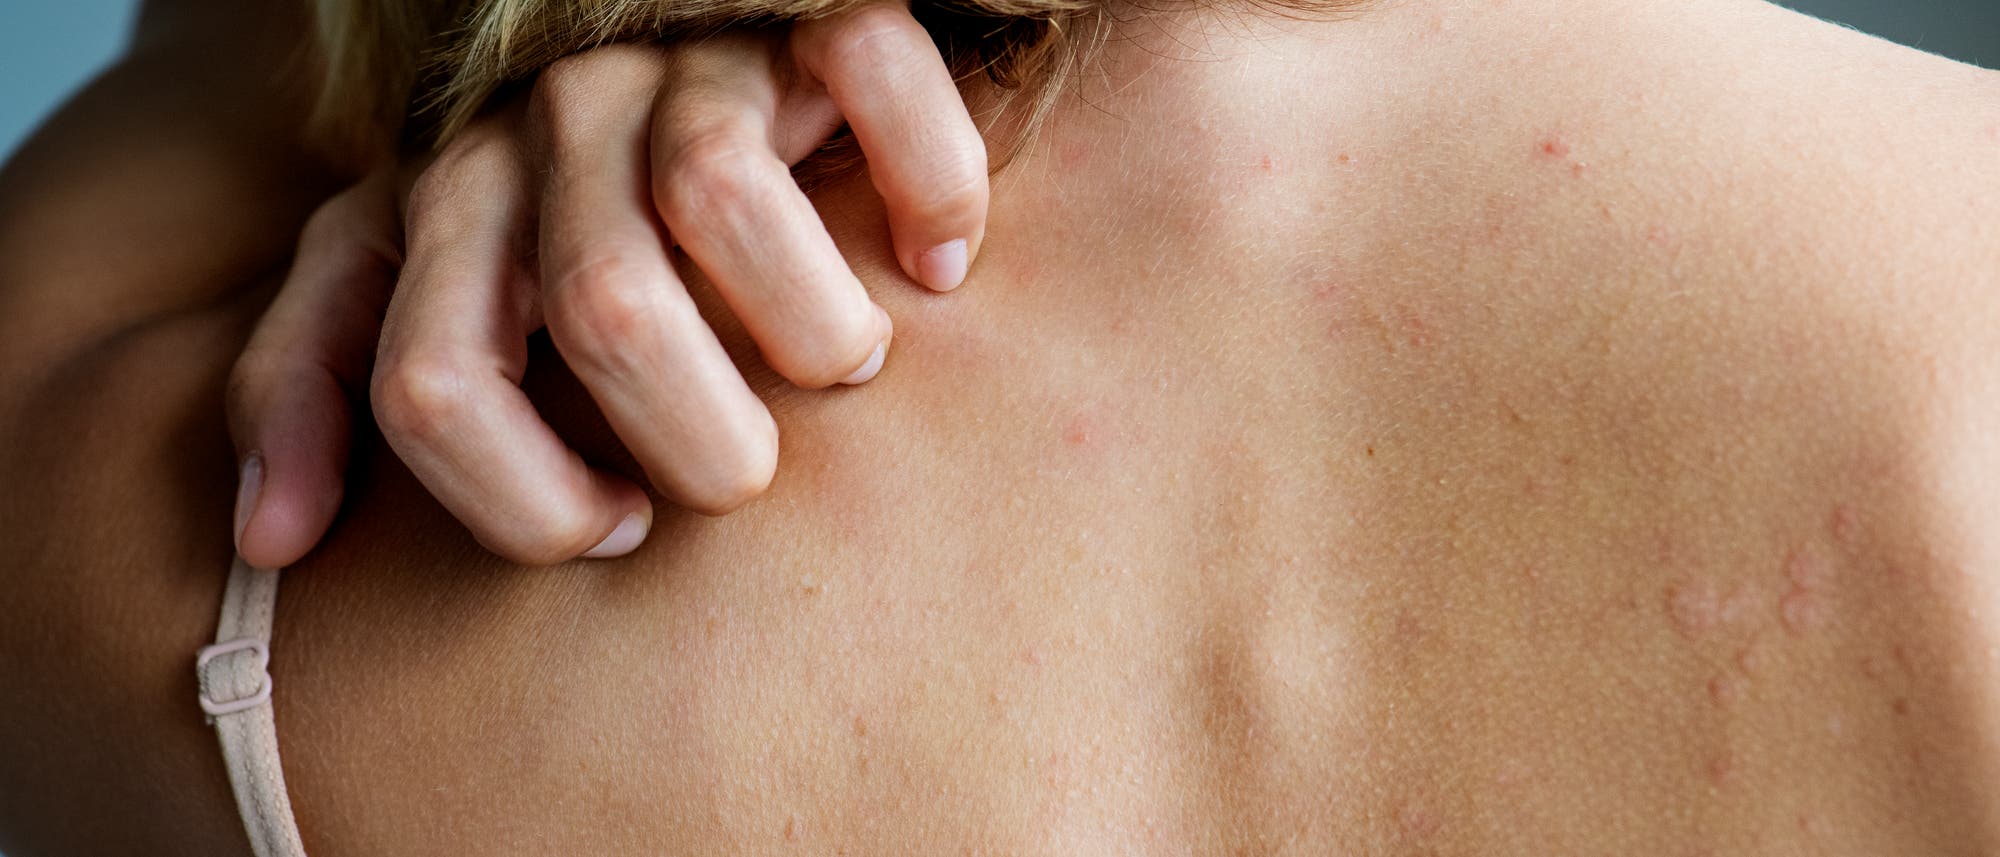 Mit Hautausschlägen oder Juckreiz beginnen etliche Autoimmunkrankheiten. Oft trifft es Frauen.